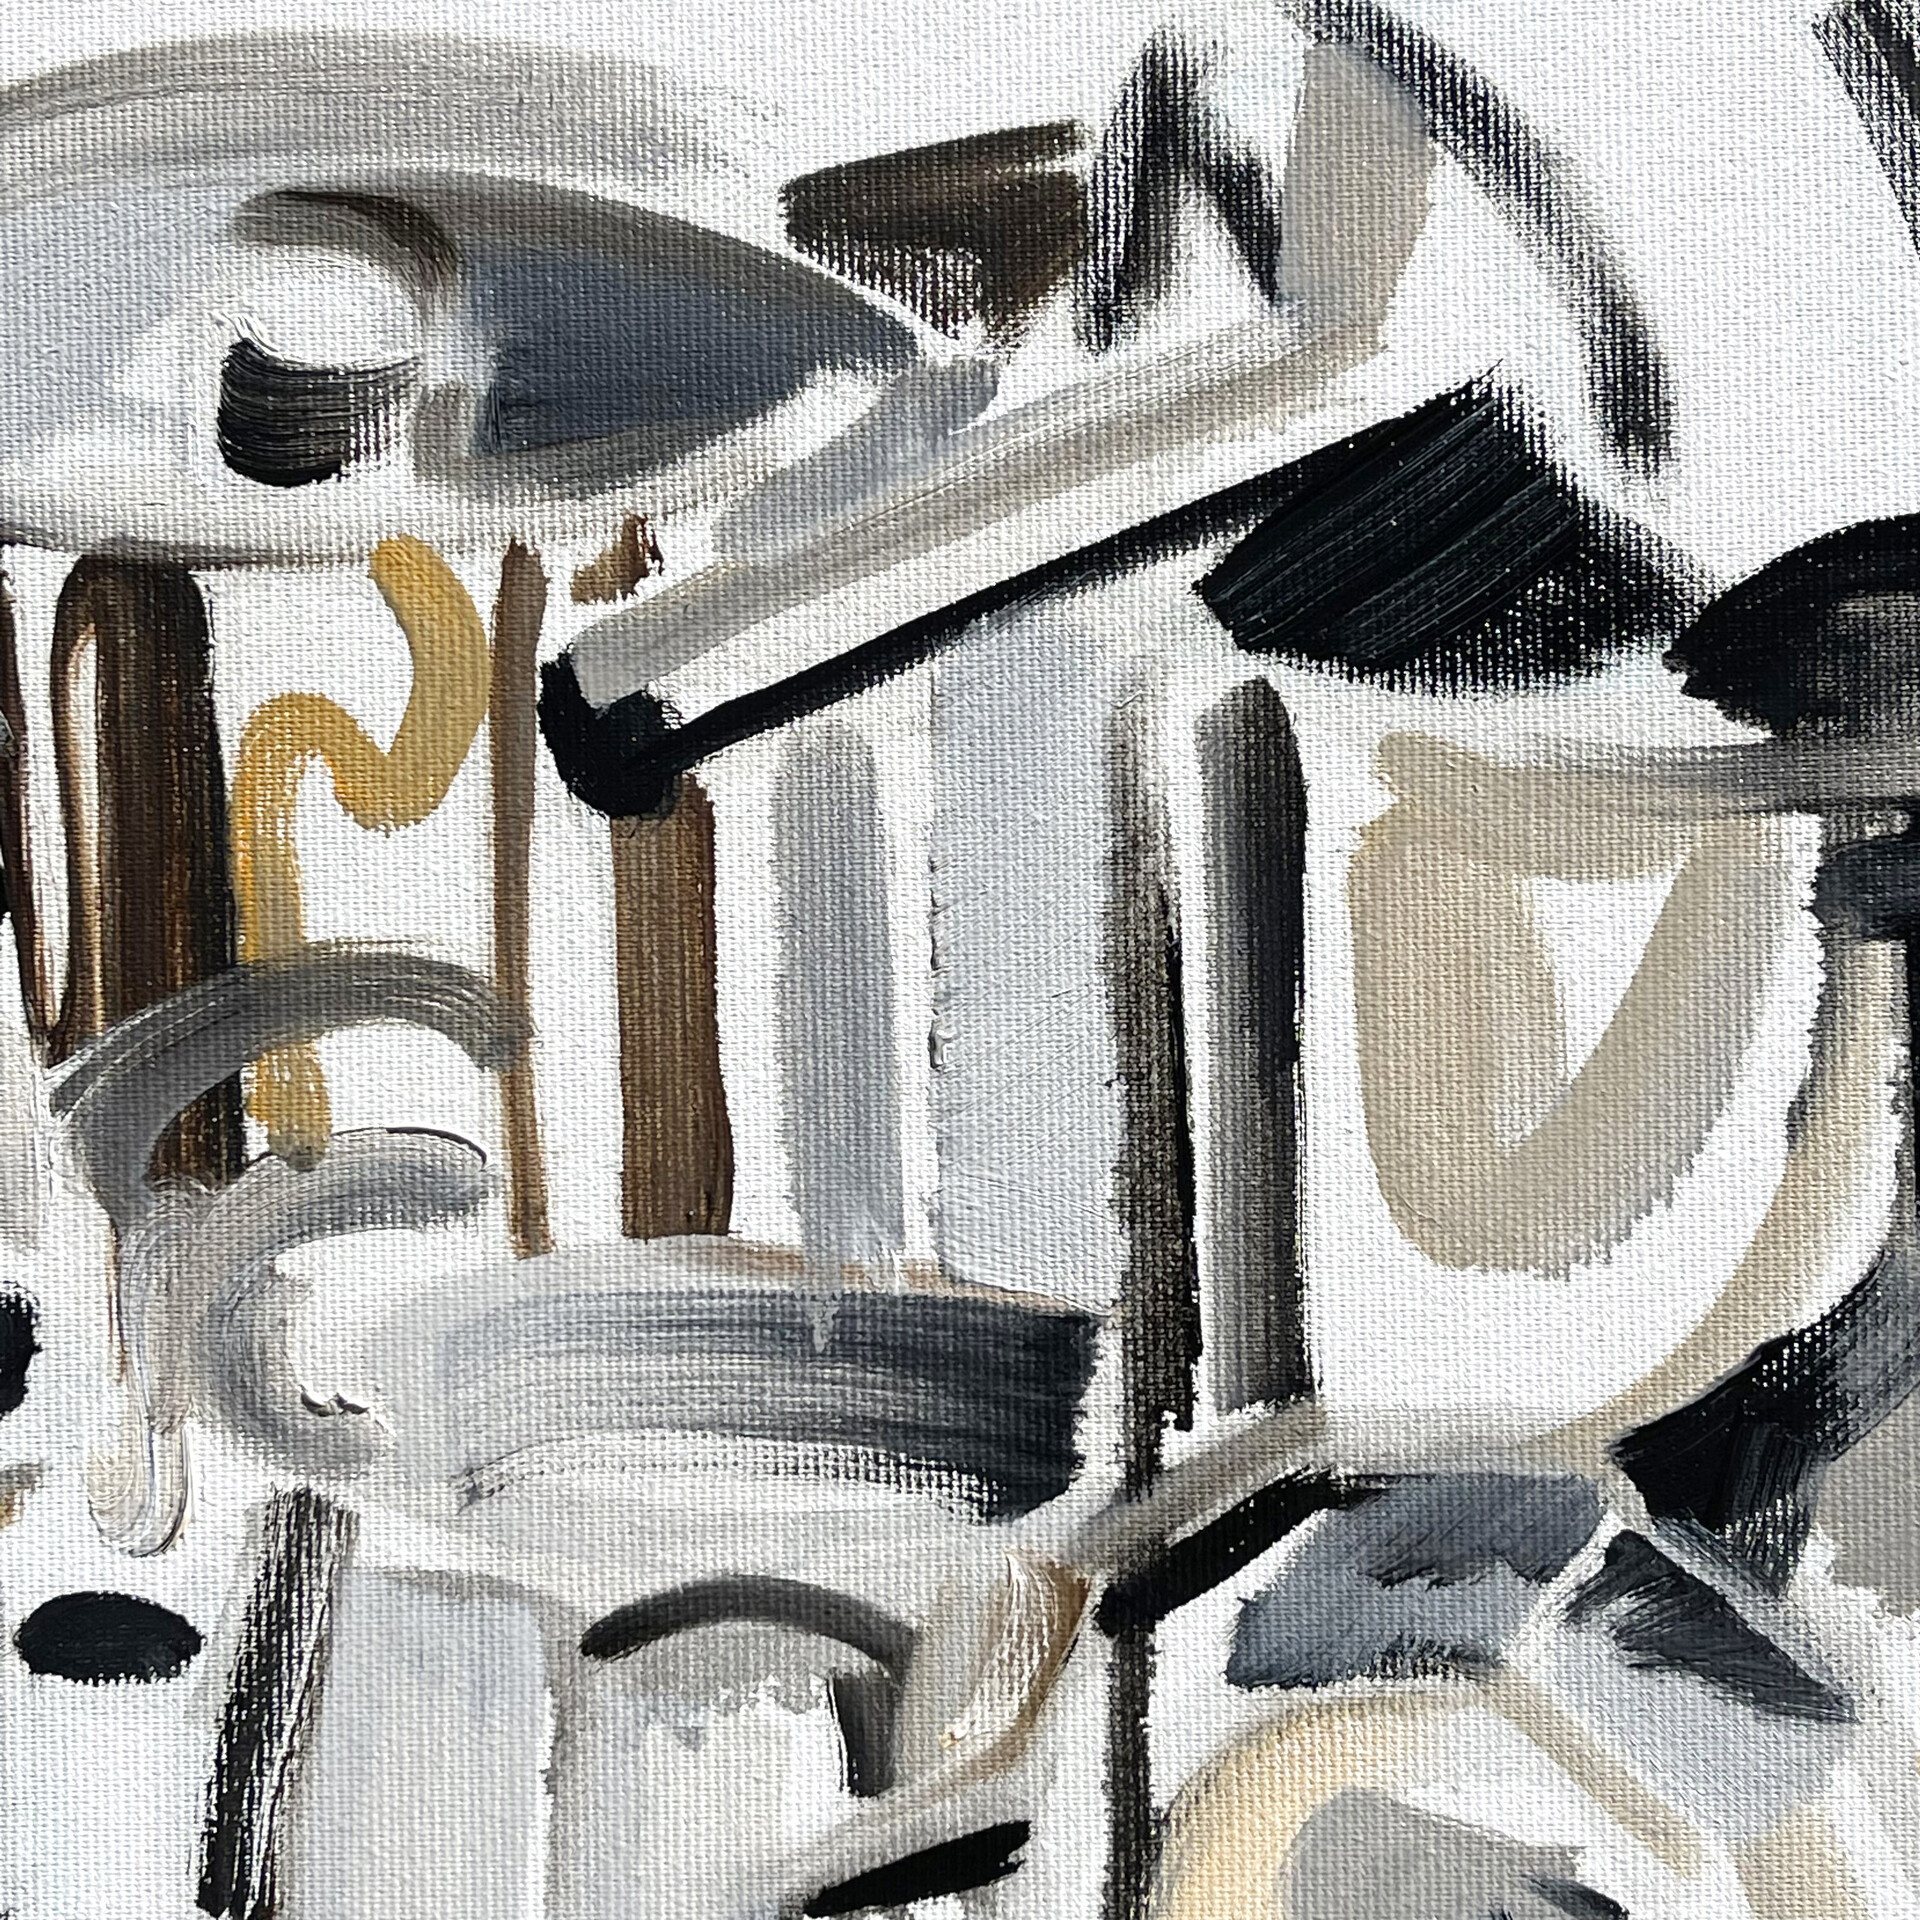 "Cafetière", 40 x 60 cm, oil on canvas, 2022